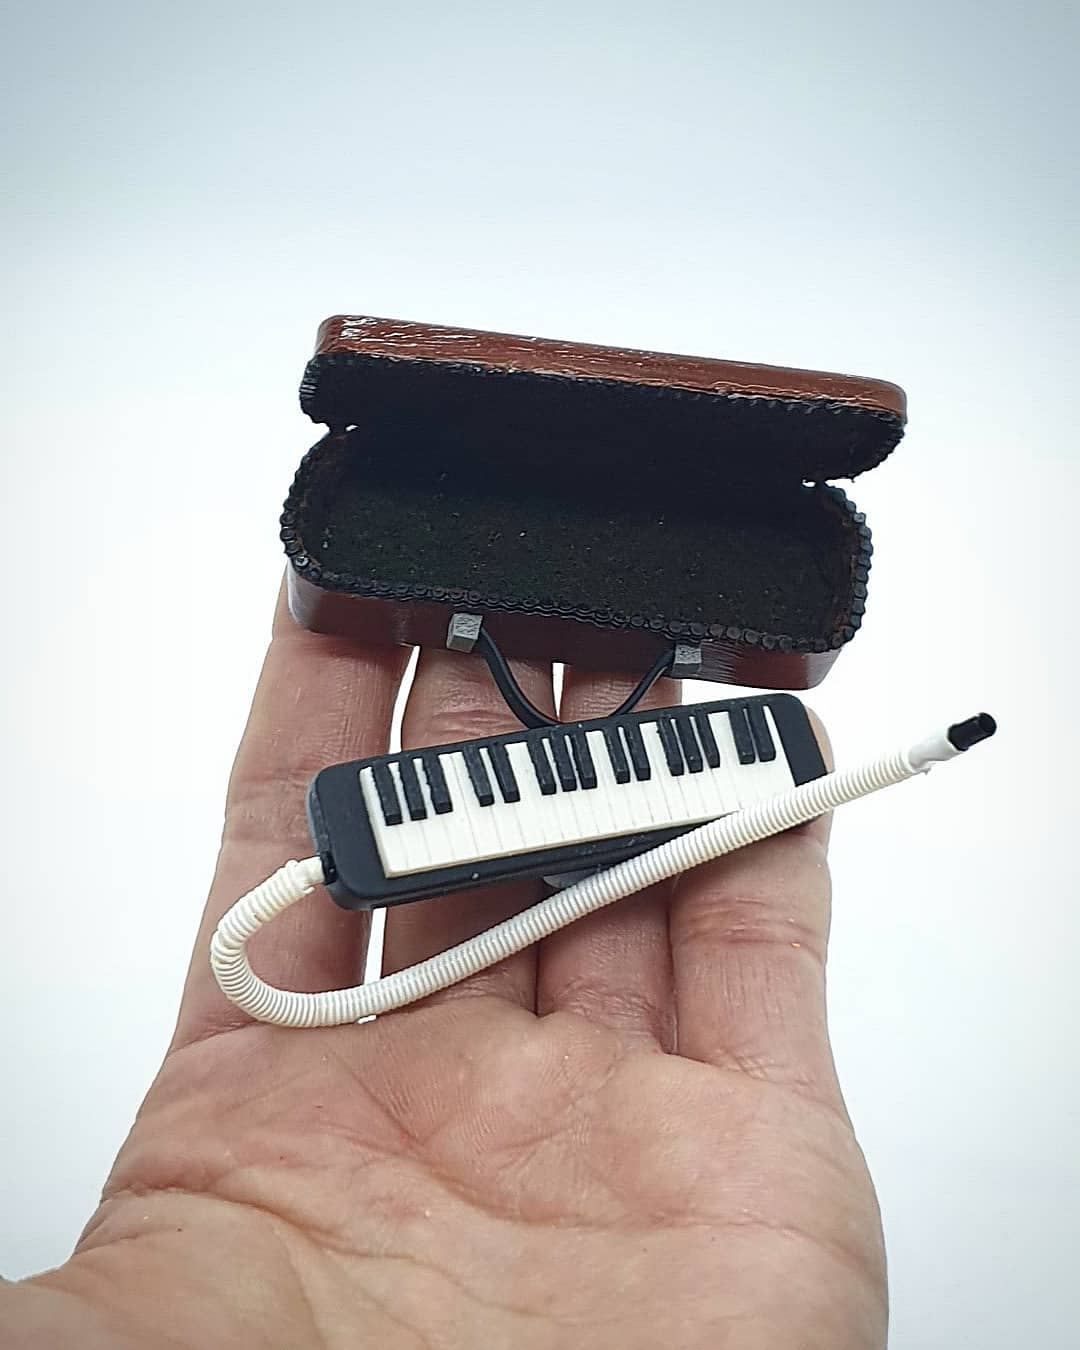 sculpture miniature keyboard sunny miniworld